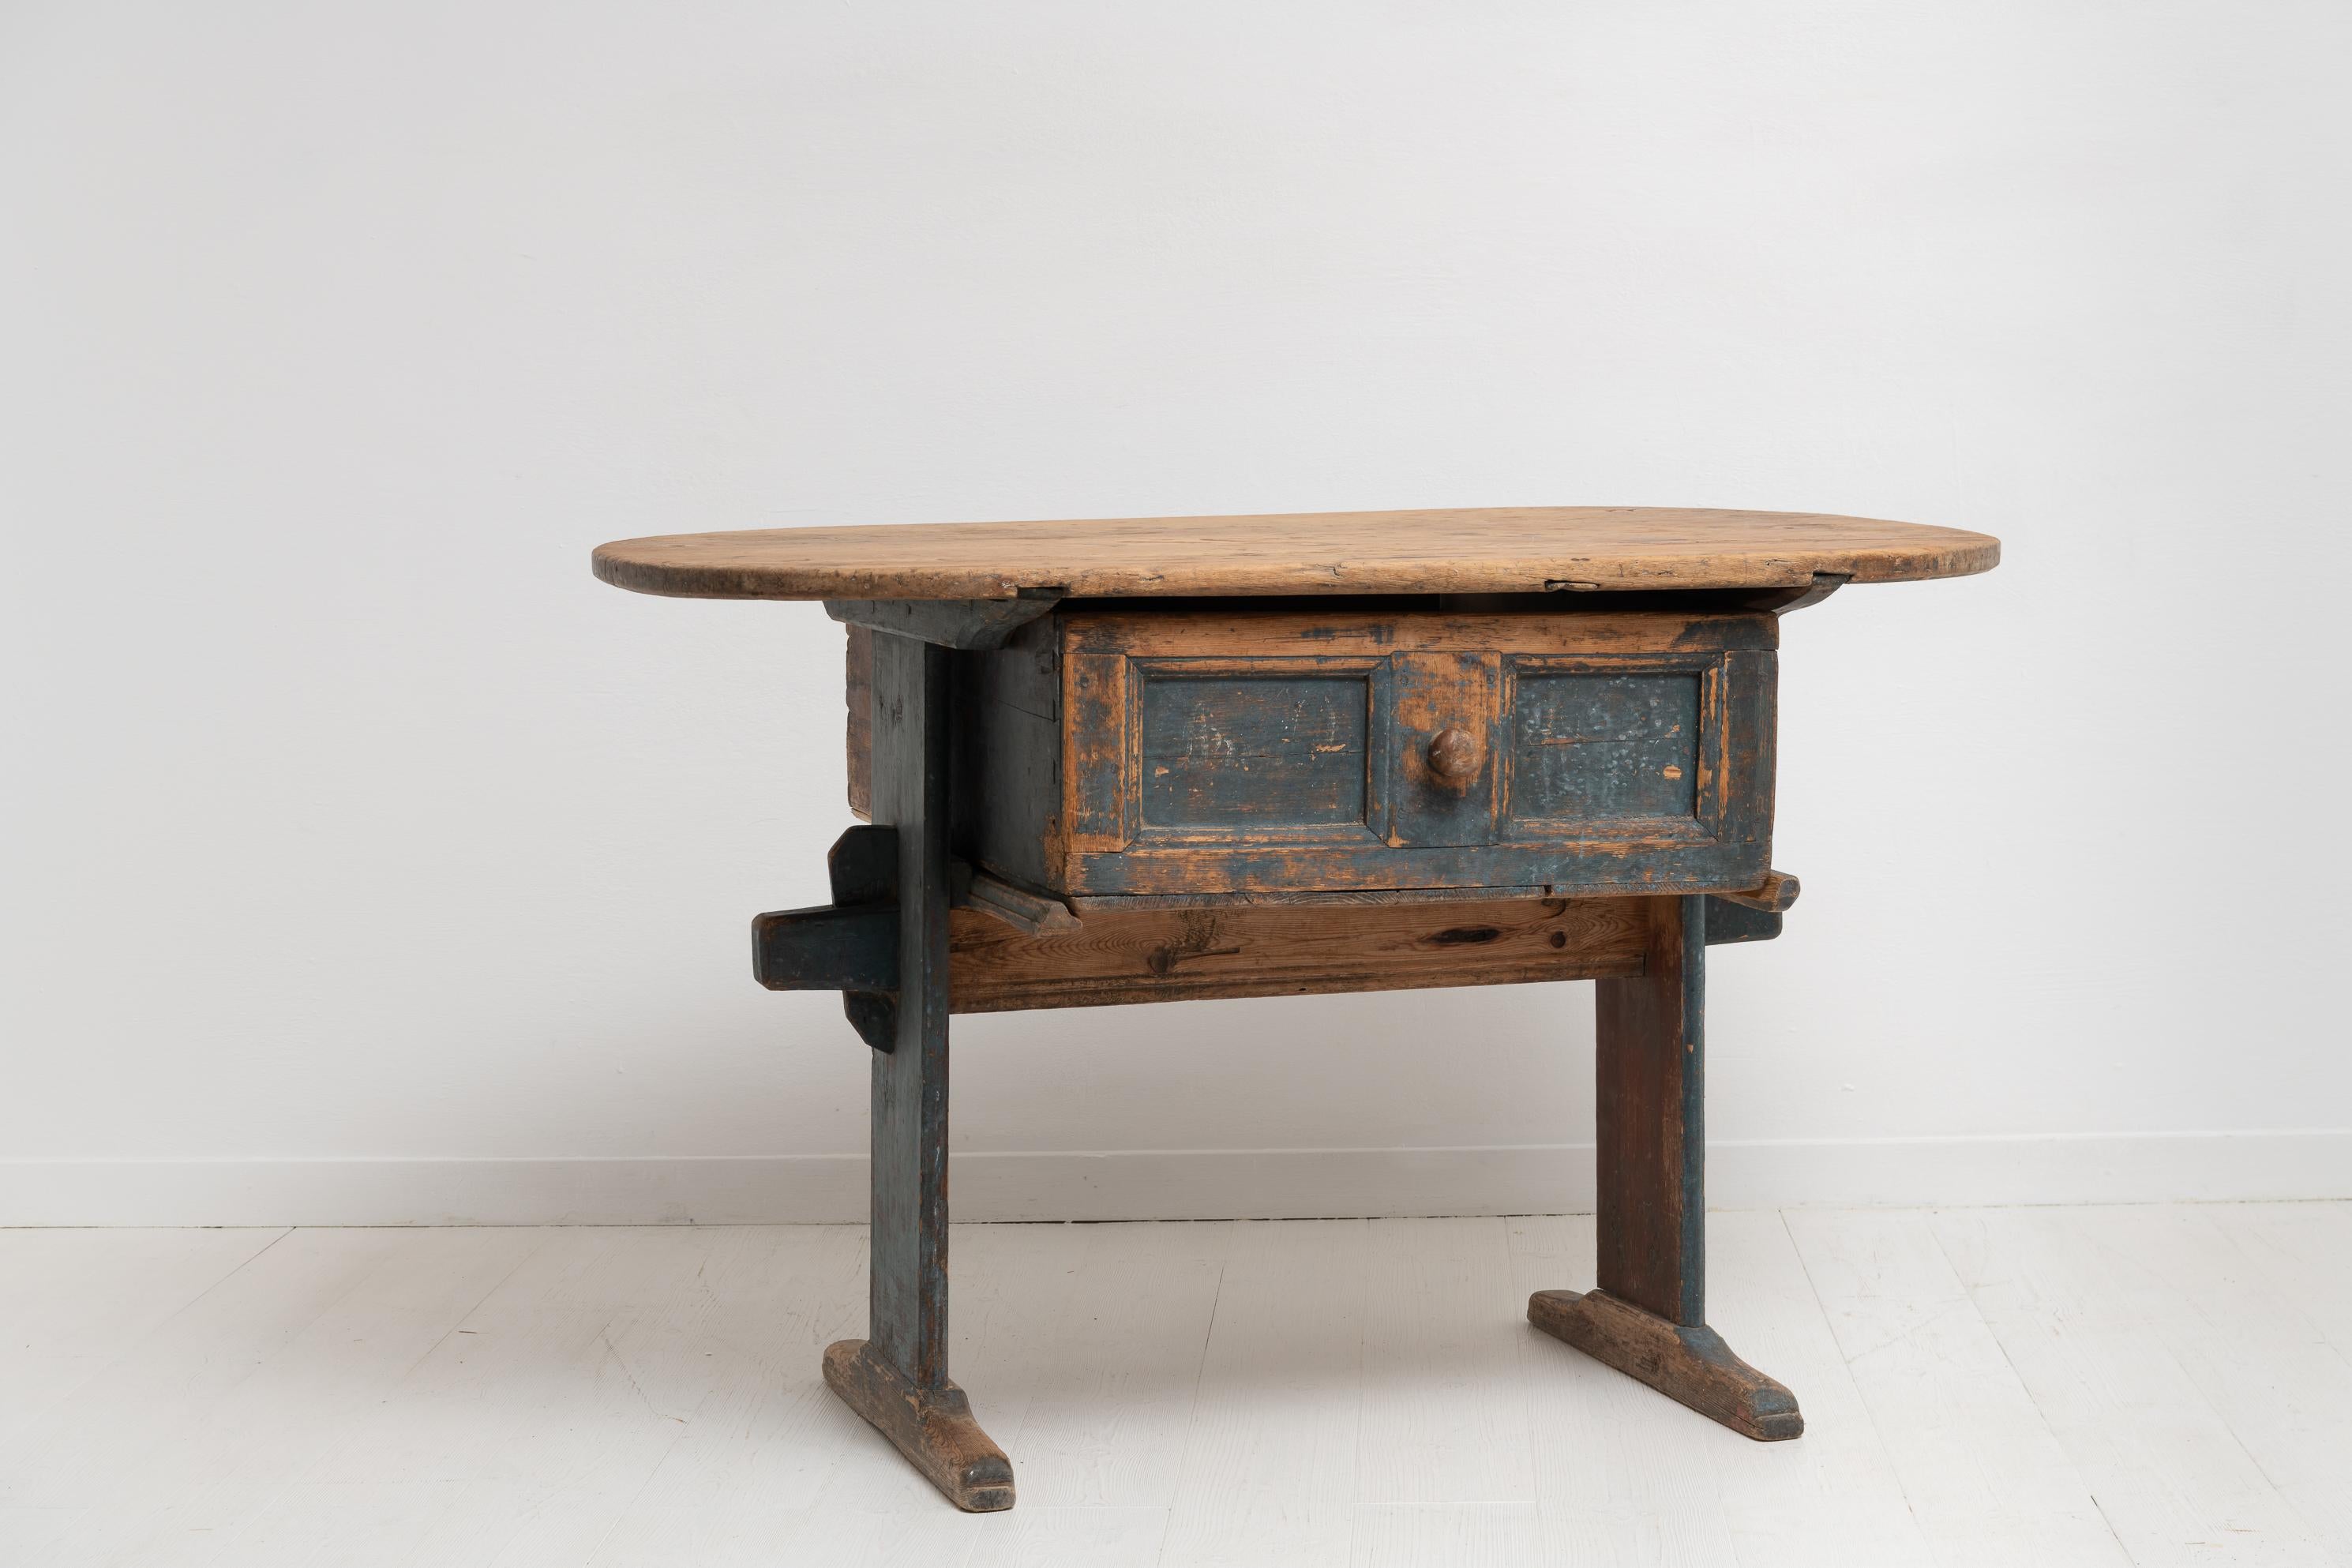 Table de campagne d'art populaire du nord de la Suède, fabriquée en pin à la fin des années 1700. La charmante table est un meuble de campagne inhabituel en état authentiquement intact avec la peinture d'origine. Une usure authentique après presque